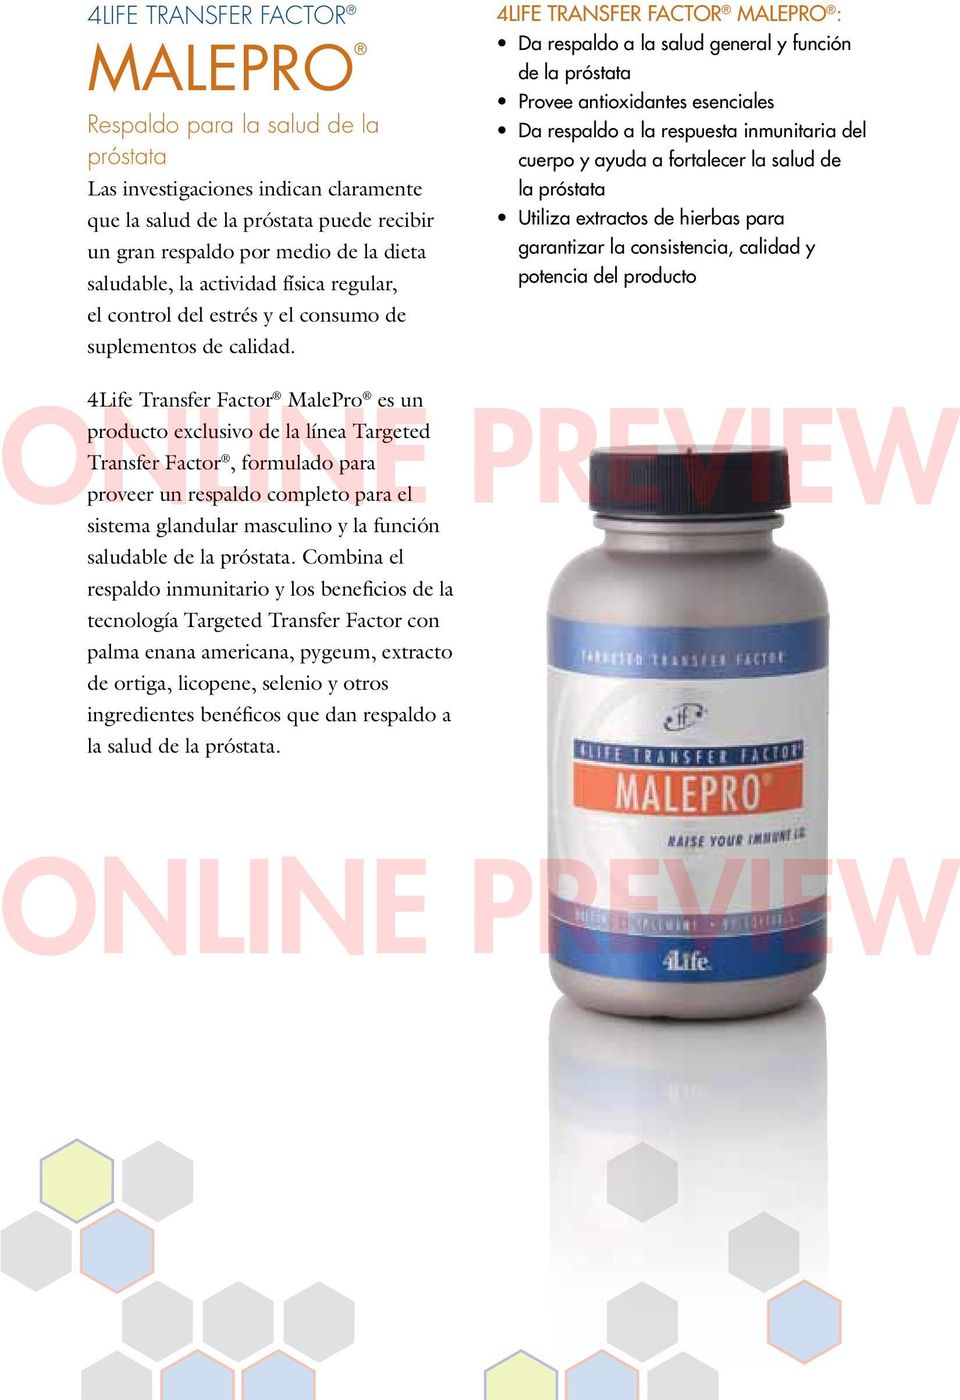 4Life Transfer Factor MalePro : Da respaldo a la salud general y función de la próstata Provee antioxidantes esenciales Da respaldo a la respuesta inmunitaria del cuerpo y ayuda a fortalecer la salud